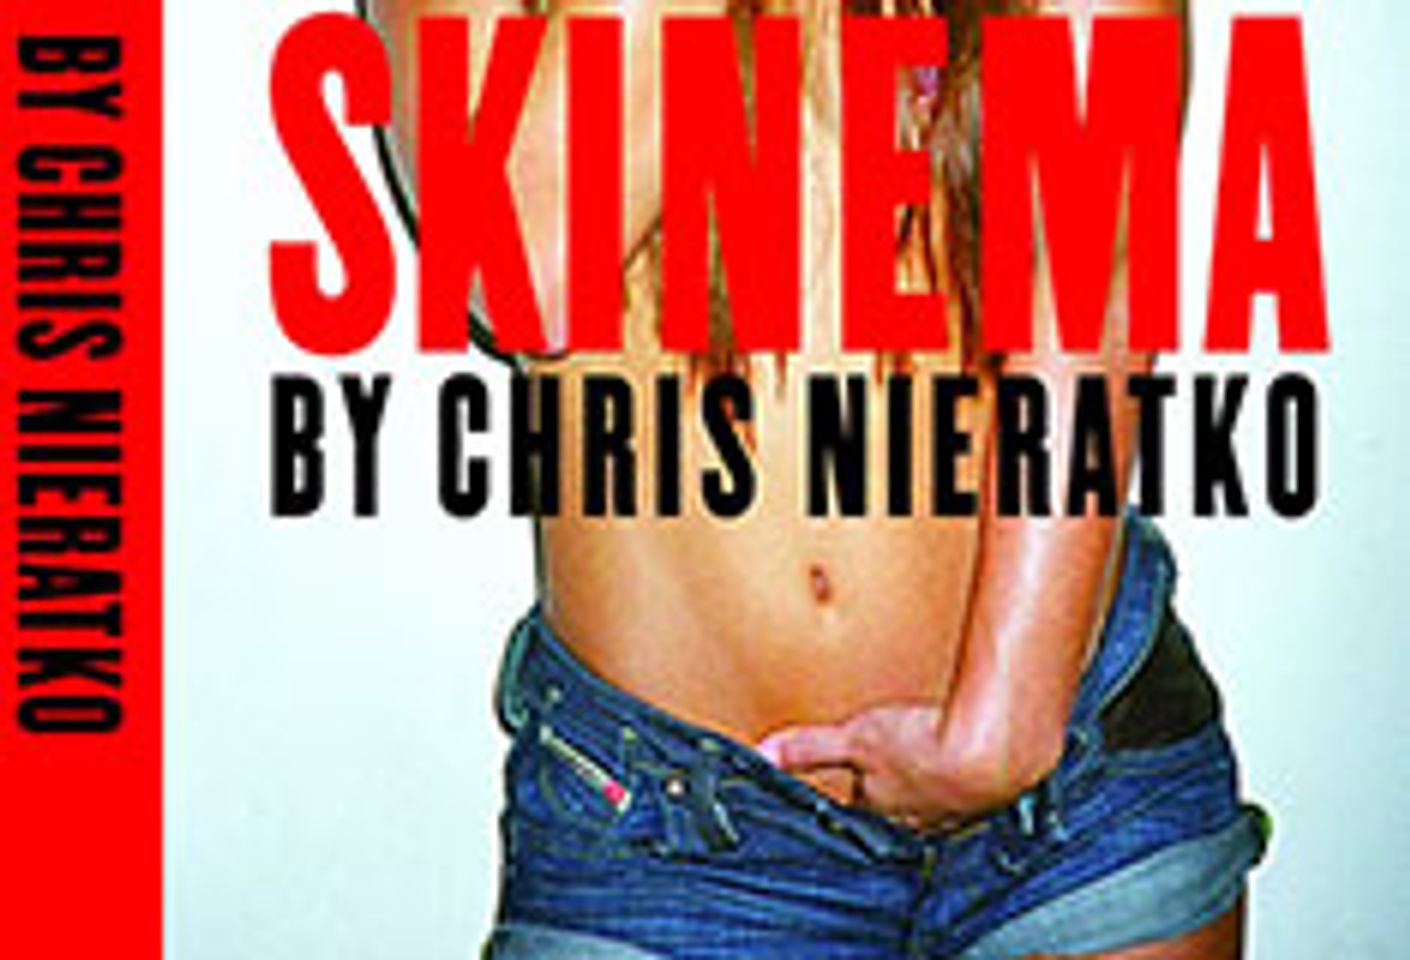 Vice Books Publishes Chris Nieratko's <i>Skinema</i>